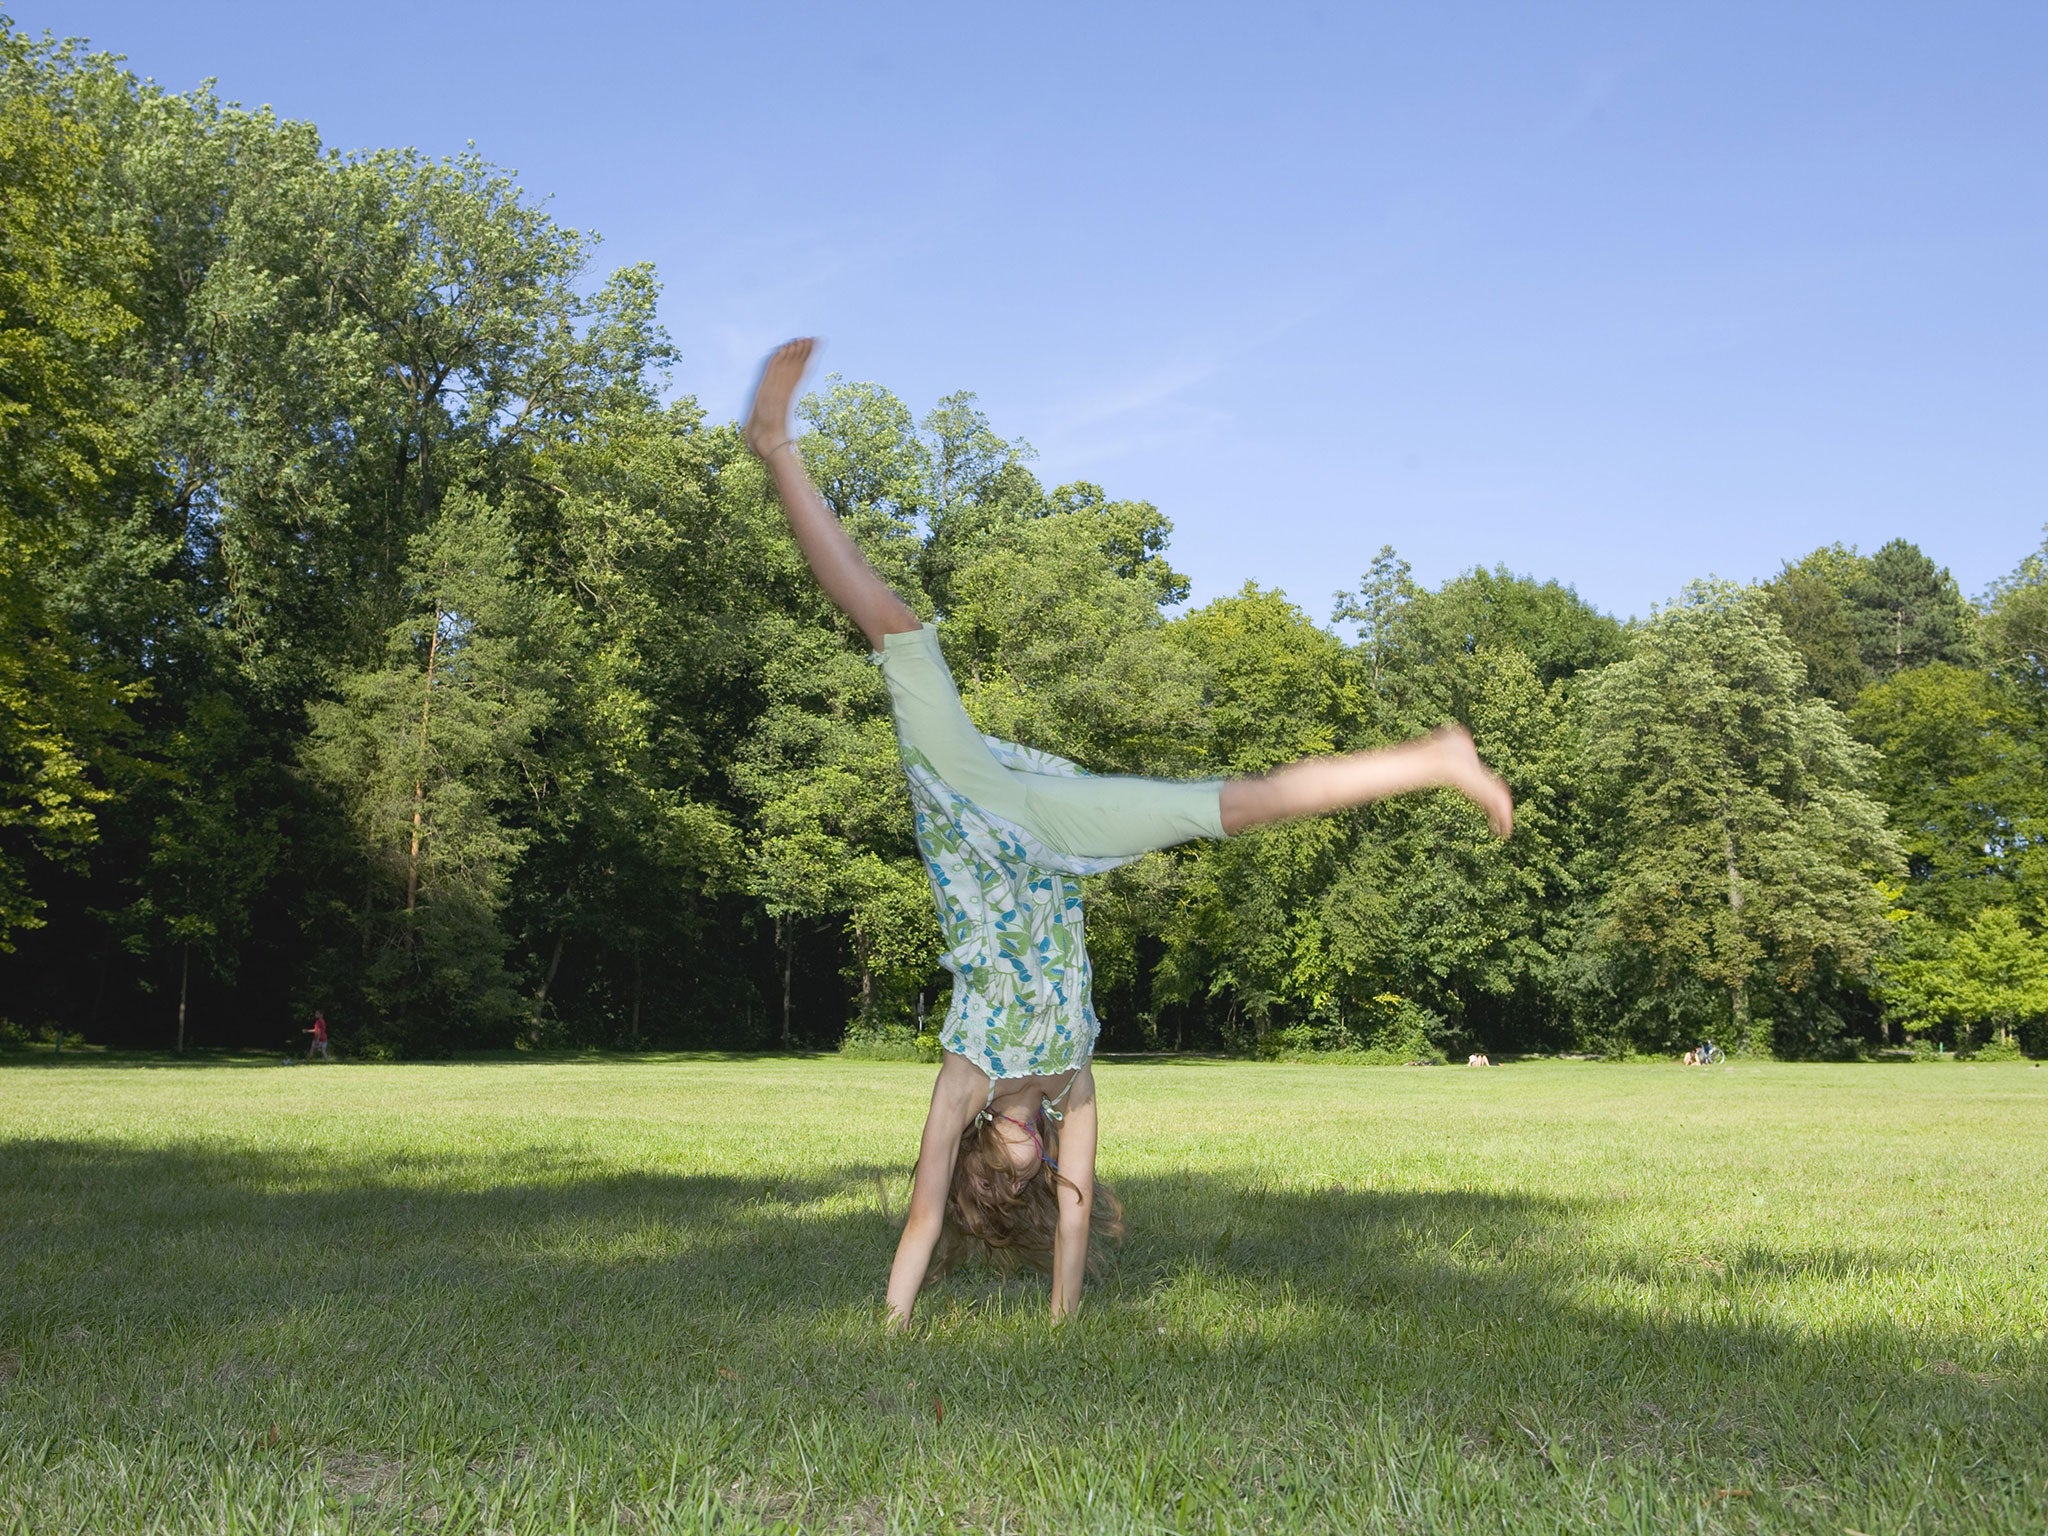 A girl does a cartwheel